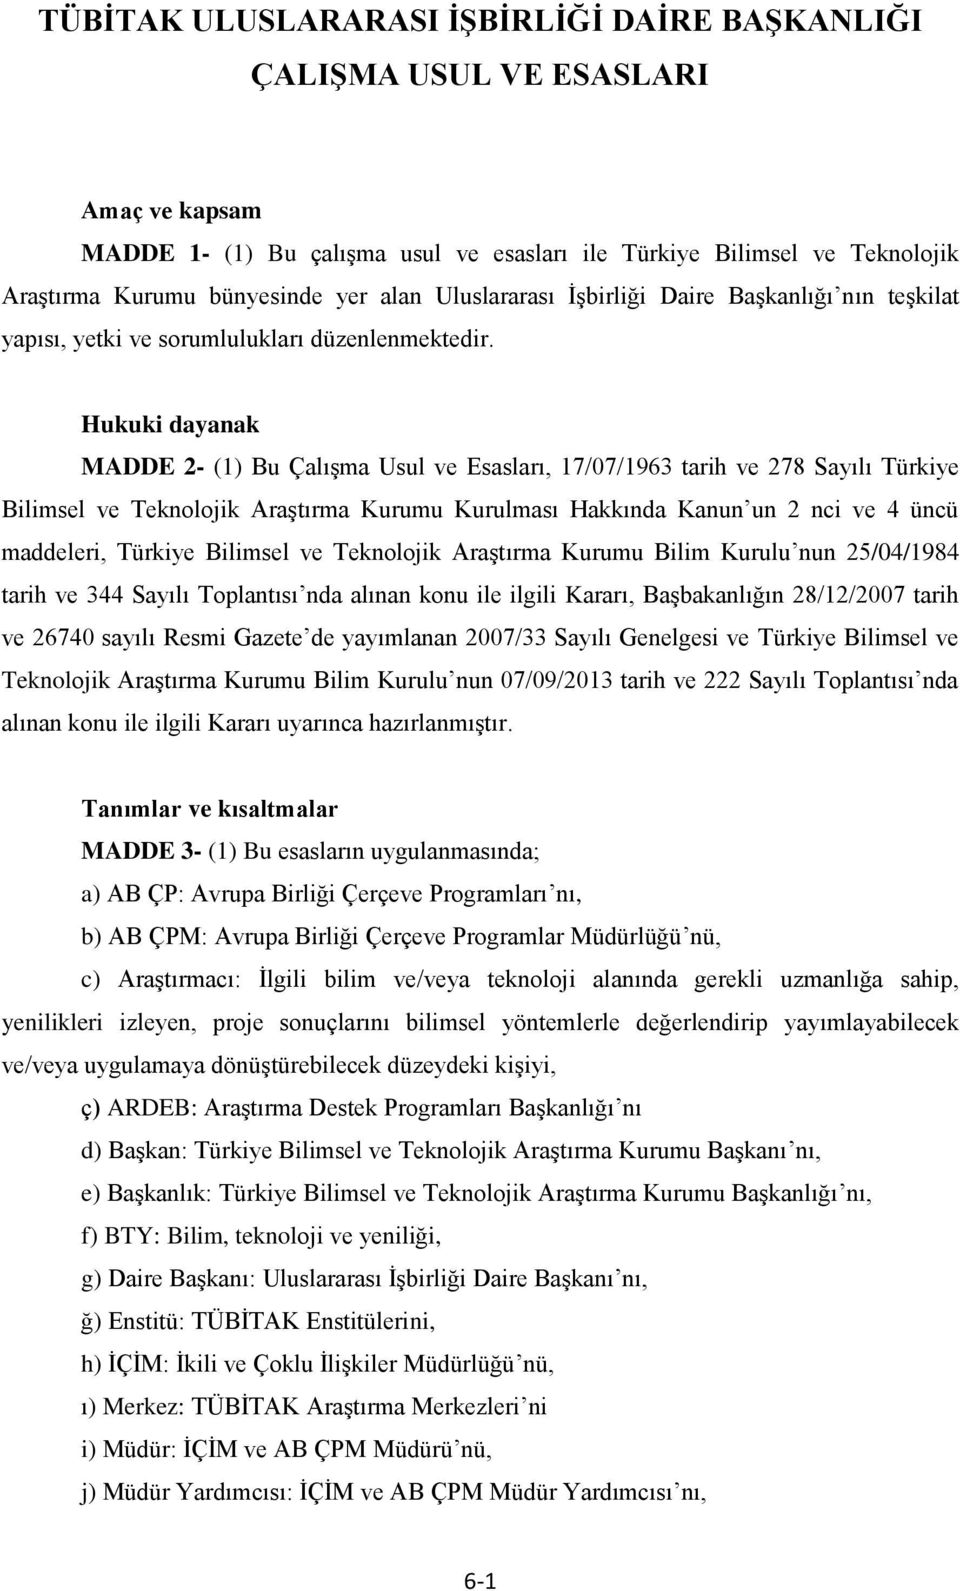 Hukuki dayanak MADDE 2- (1) Bu Çalışma Usul ve Esasları, 17/07/1963 tarih ve 278 Sayılı Türkiye Bilimsel ve Teknolojik Araştırma Kurumu Kurulması Hakkında Kanun un 2 nci ve 4 üncü maddeleri, Türkiye